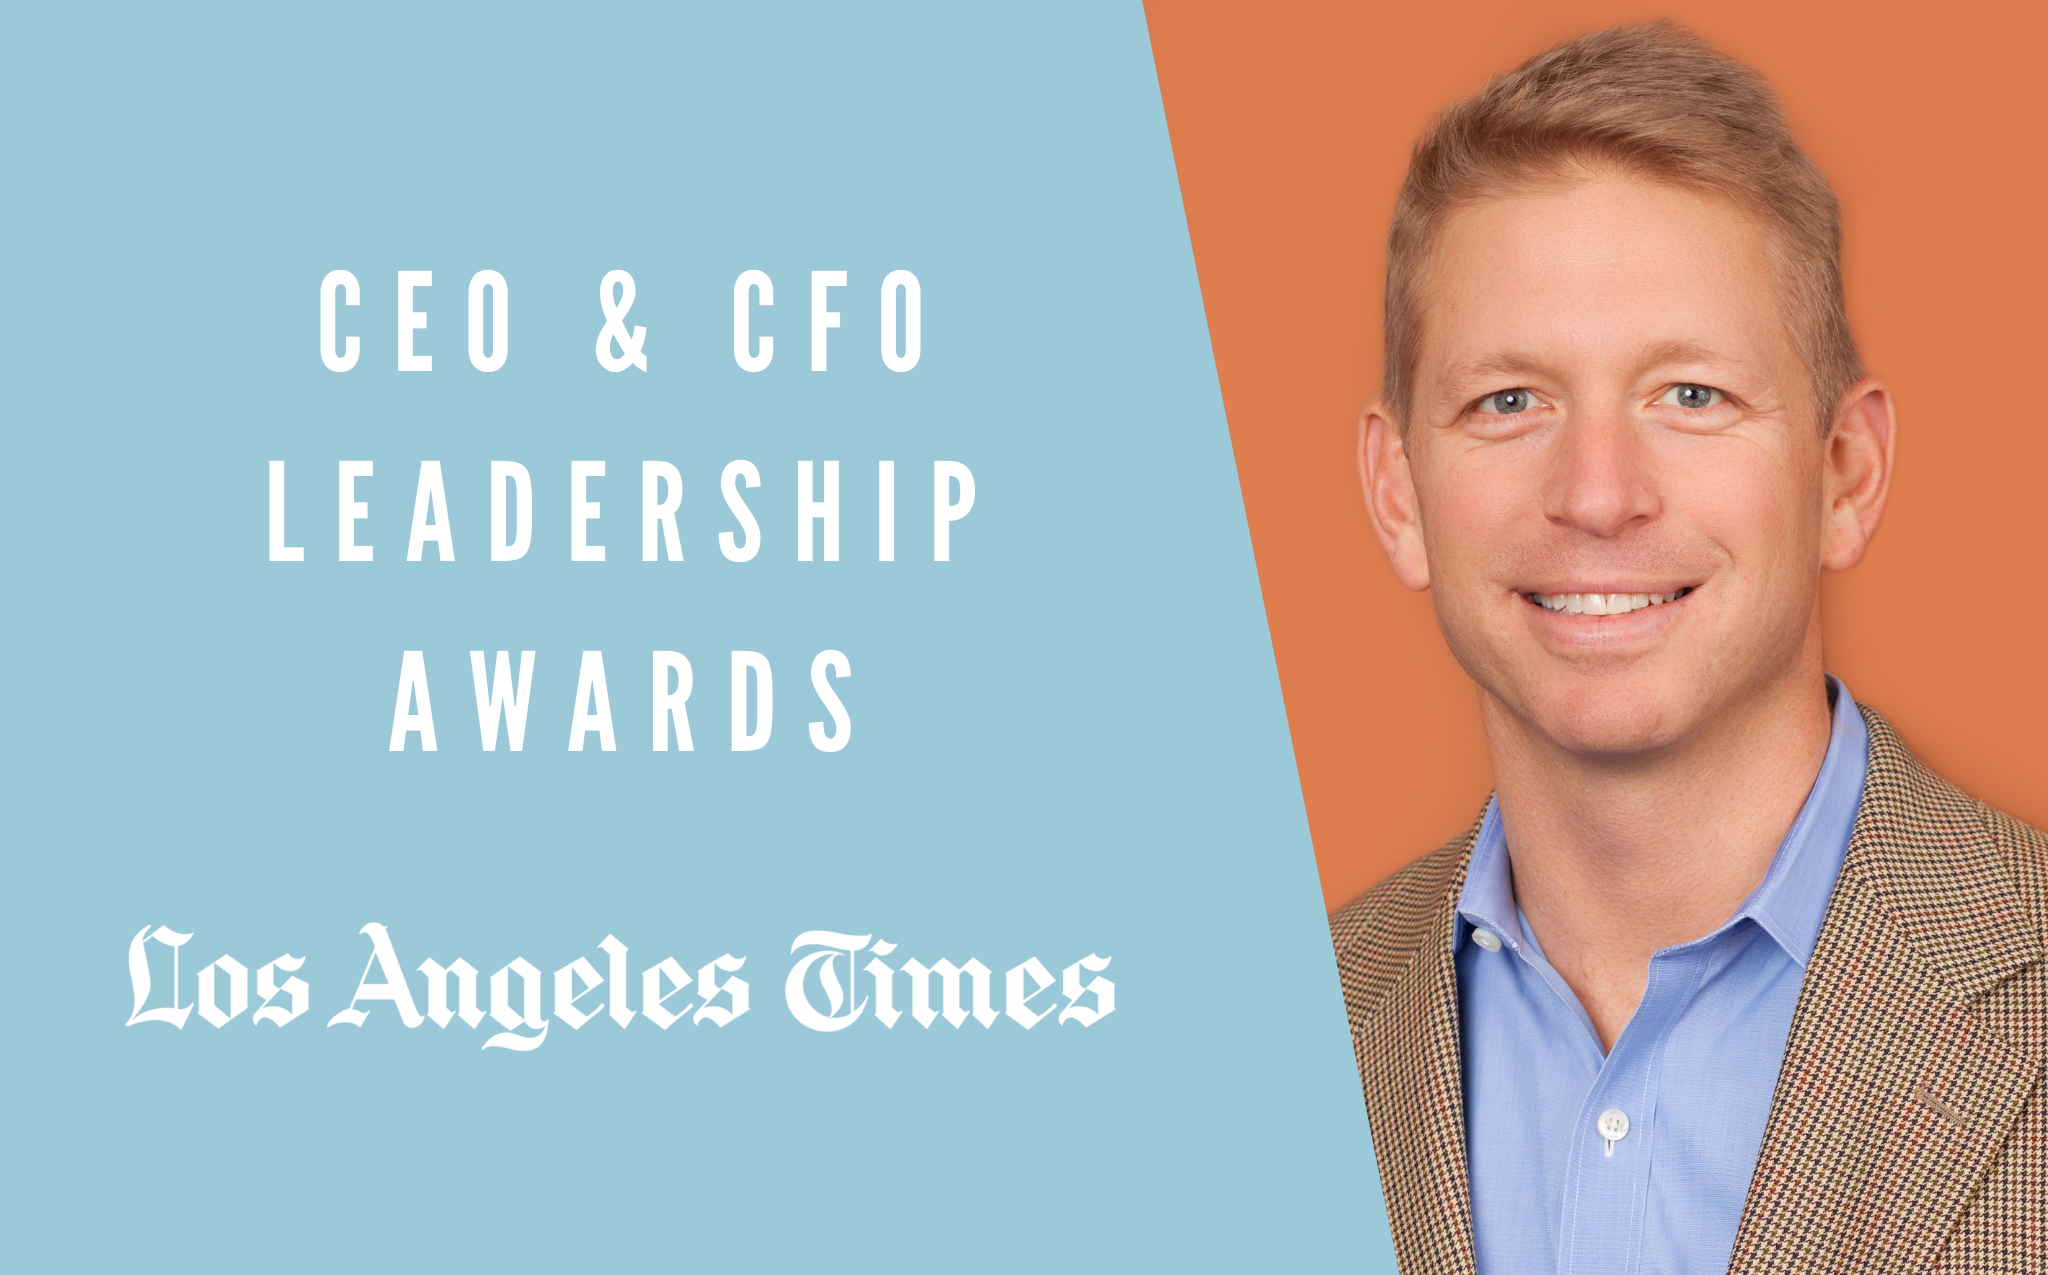 CEO Awards LA Times